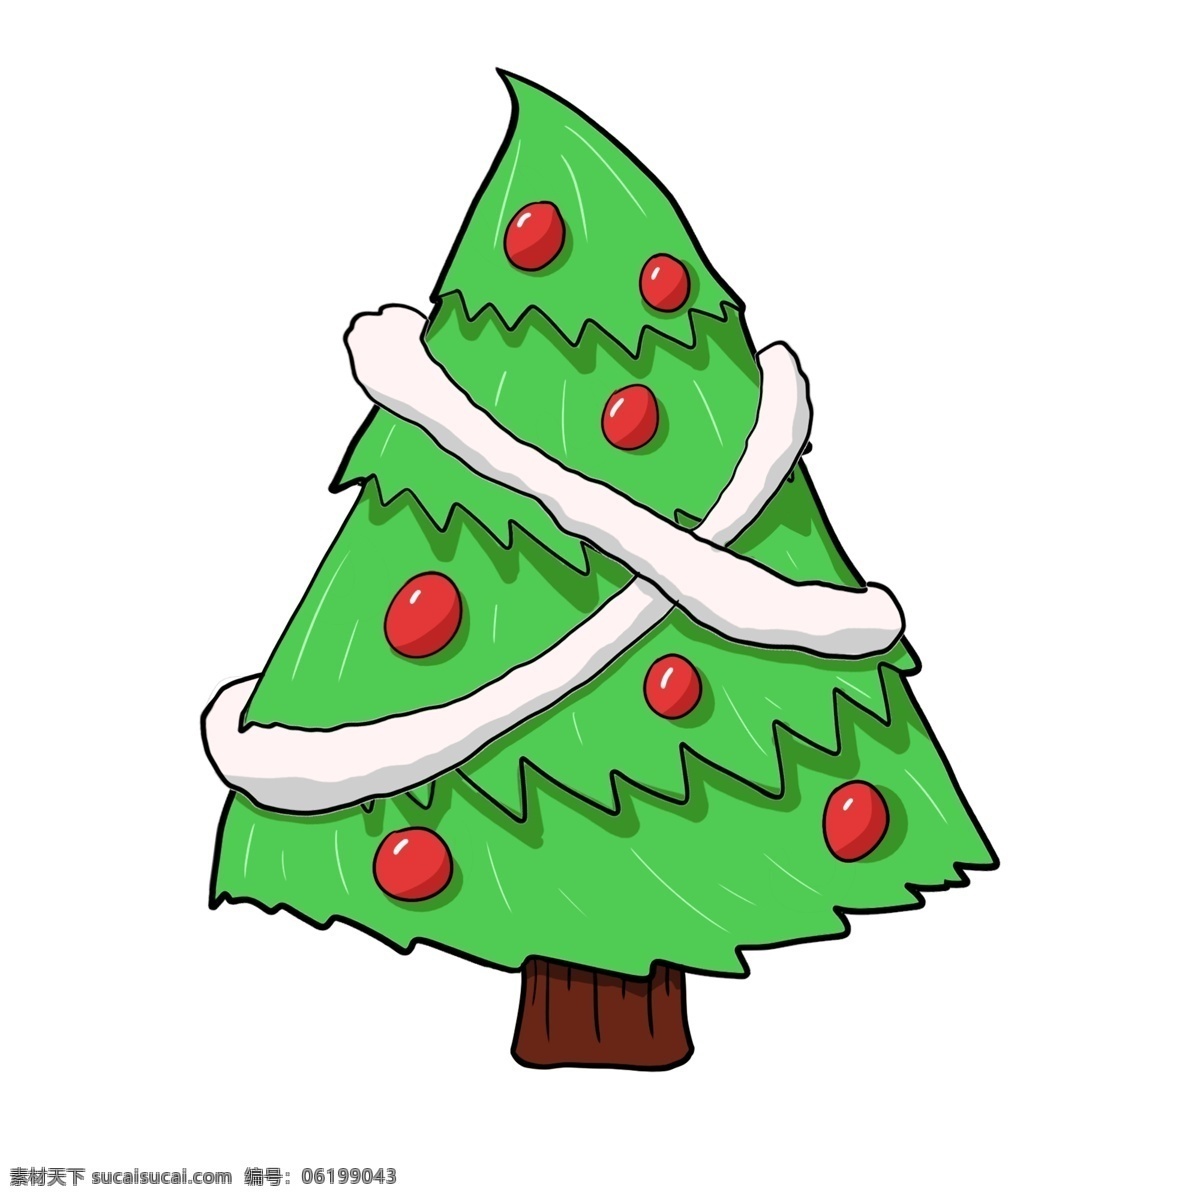 手绘 圣诞节 圣诞树 插画 圣诞节圣诞树 白色的丝带 圣诞树装饰 手绘圣诞树 绿色的圣诞树 红色的圣诞球